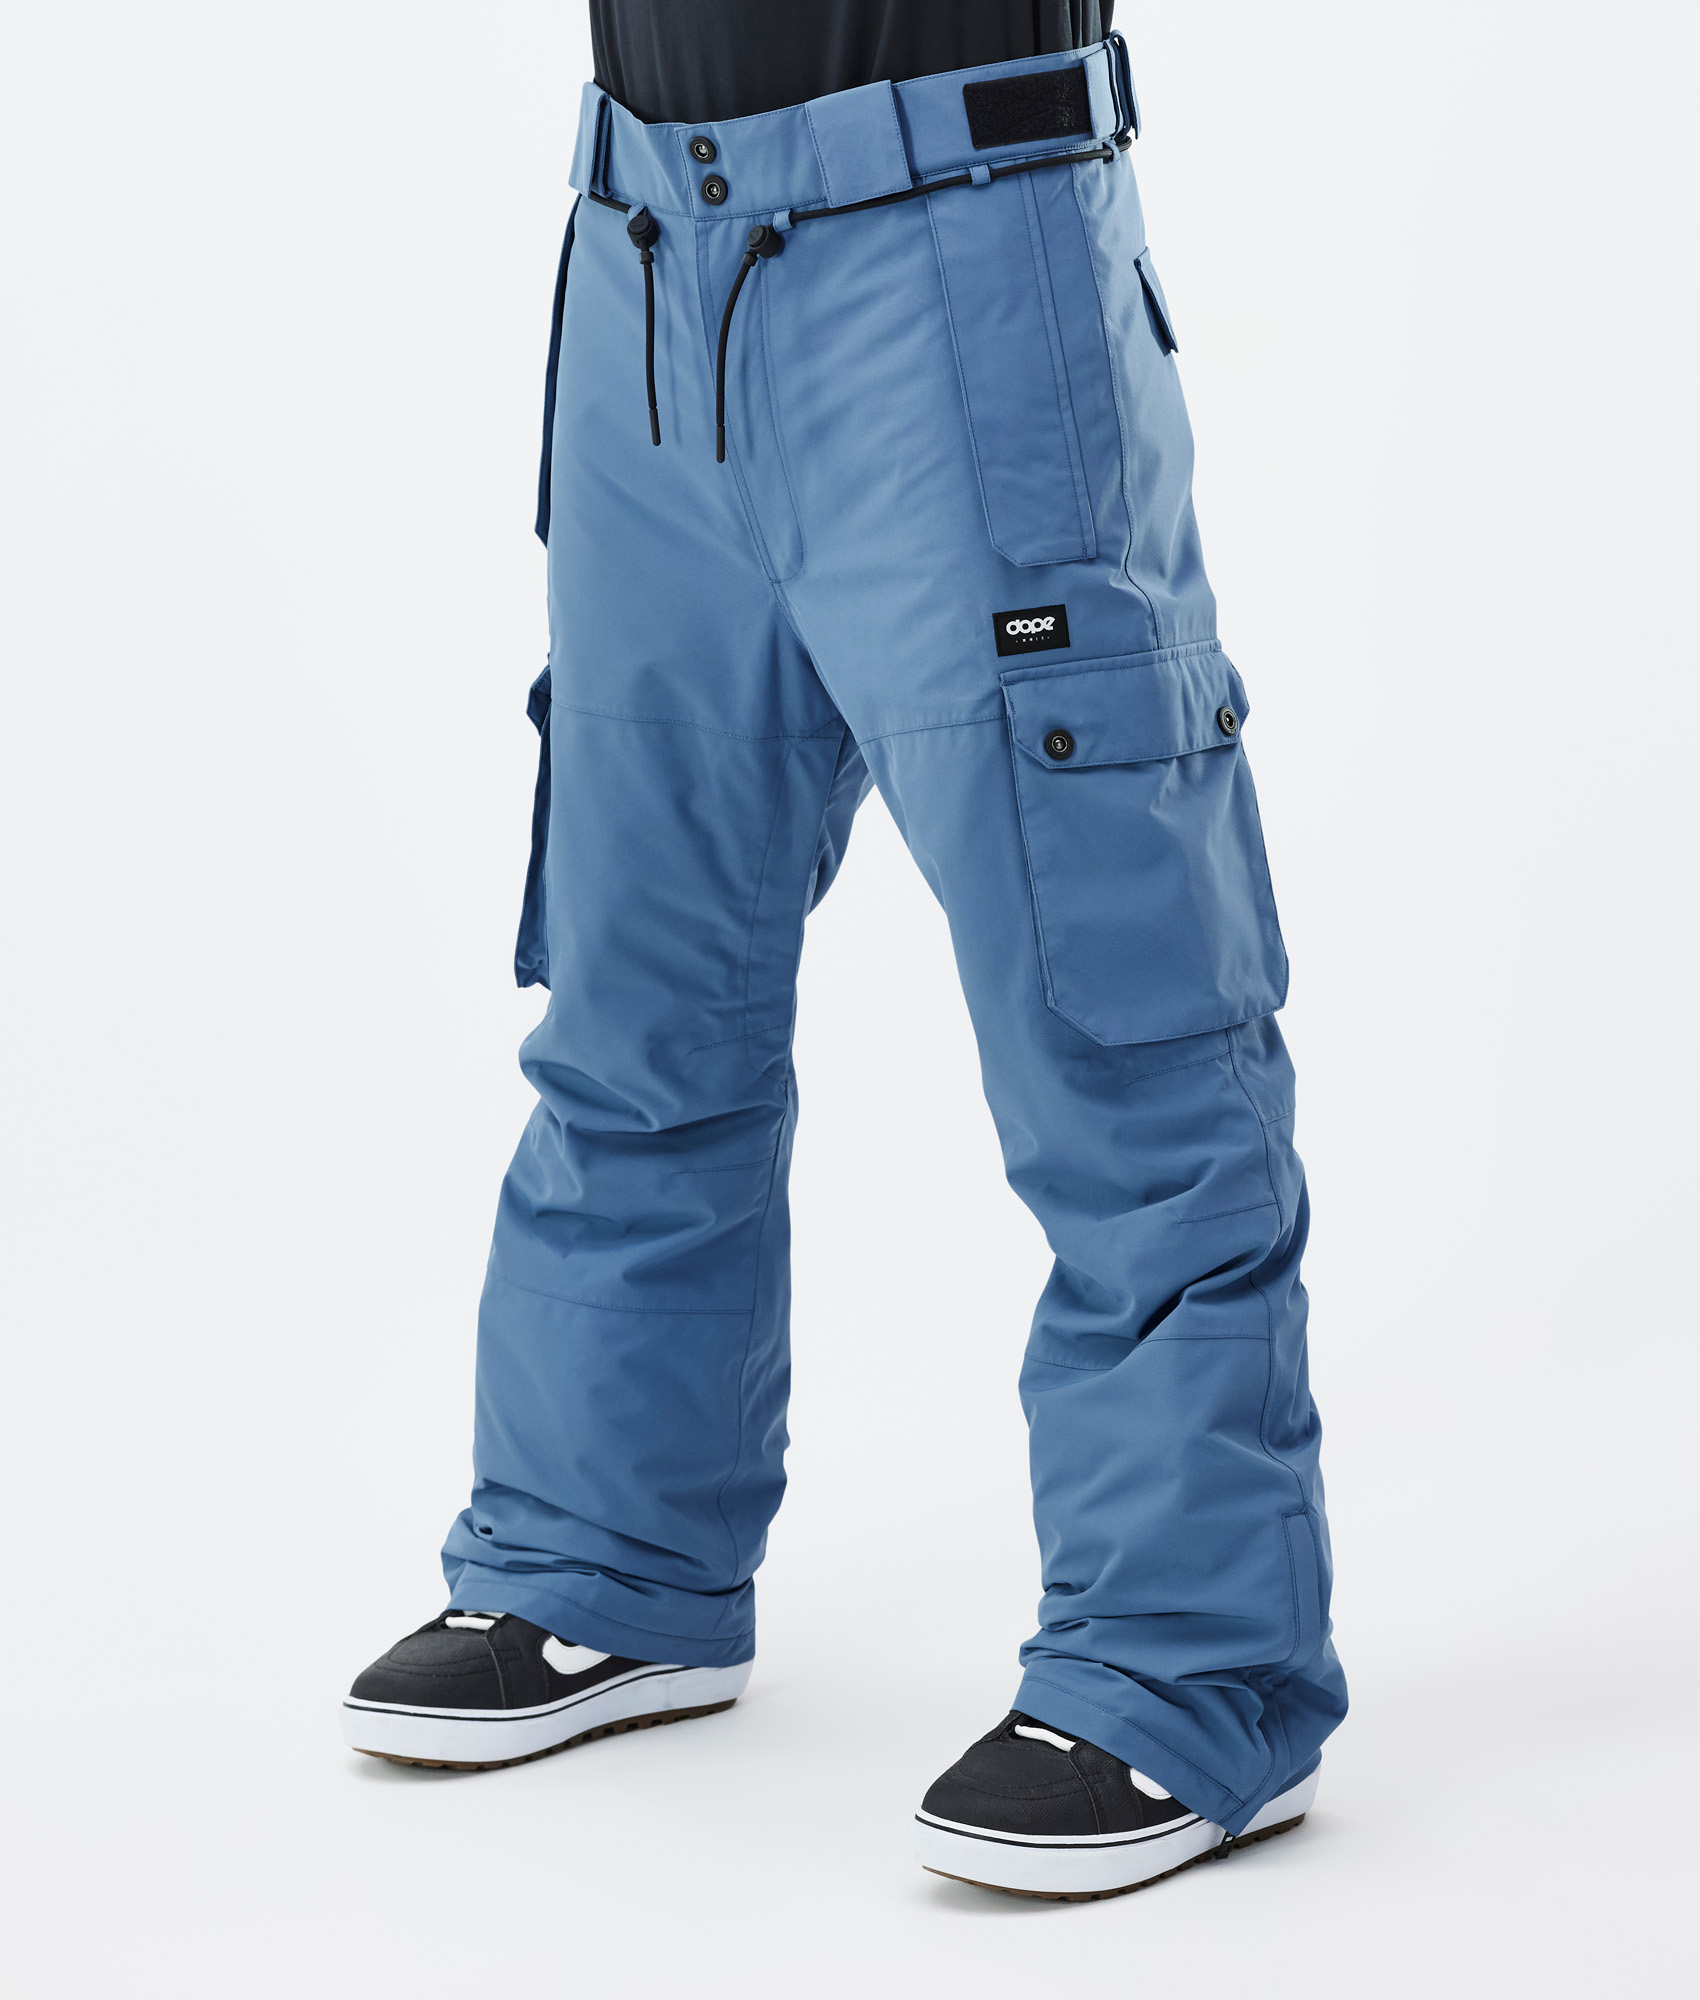 Dope Snuggle Pantalon thermique Homme Blue Steel